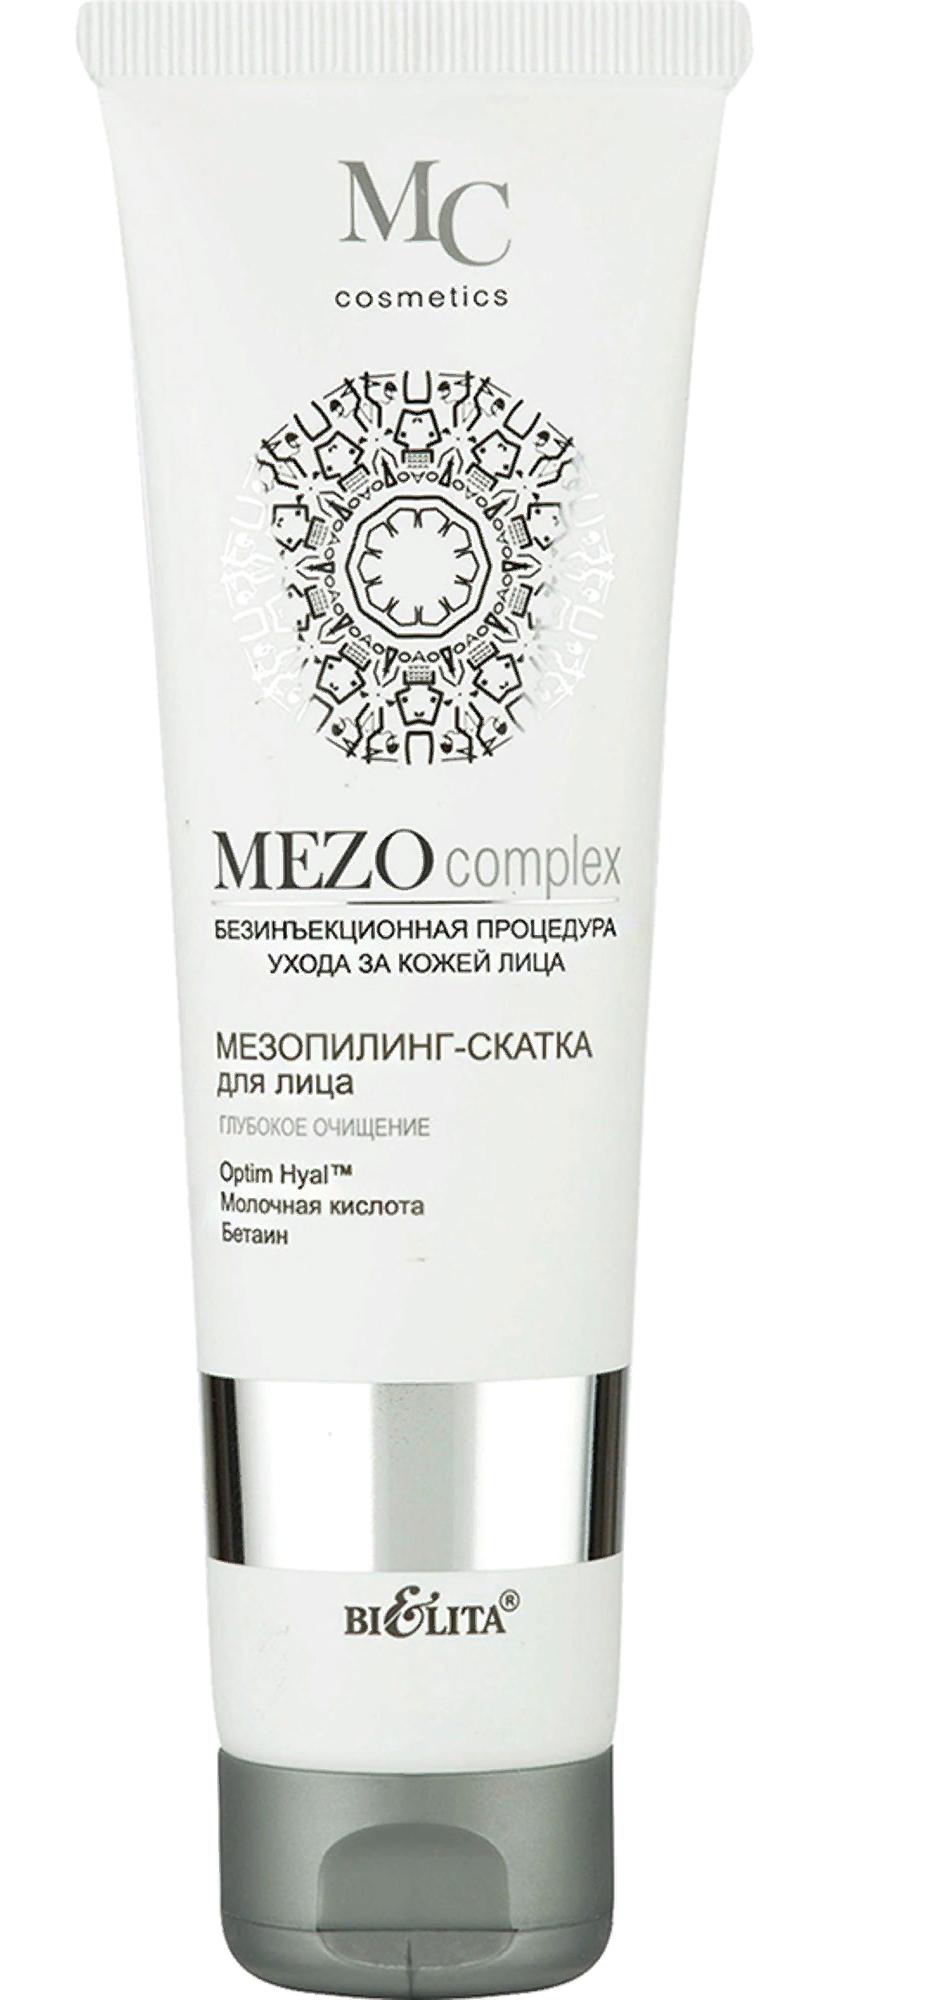 Мезопилинг-скатка для лица MezoComplex глубокое очищение, 100мл Belita